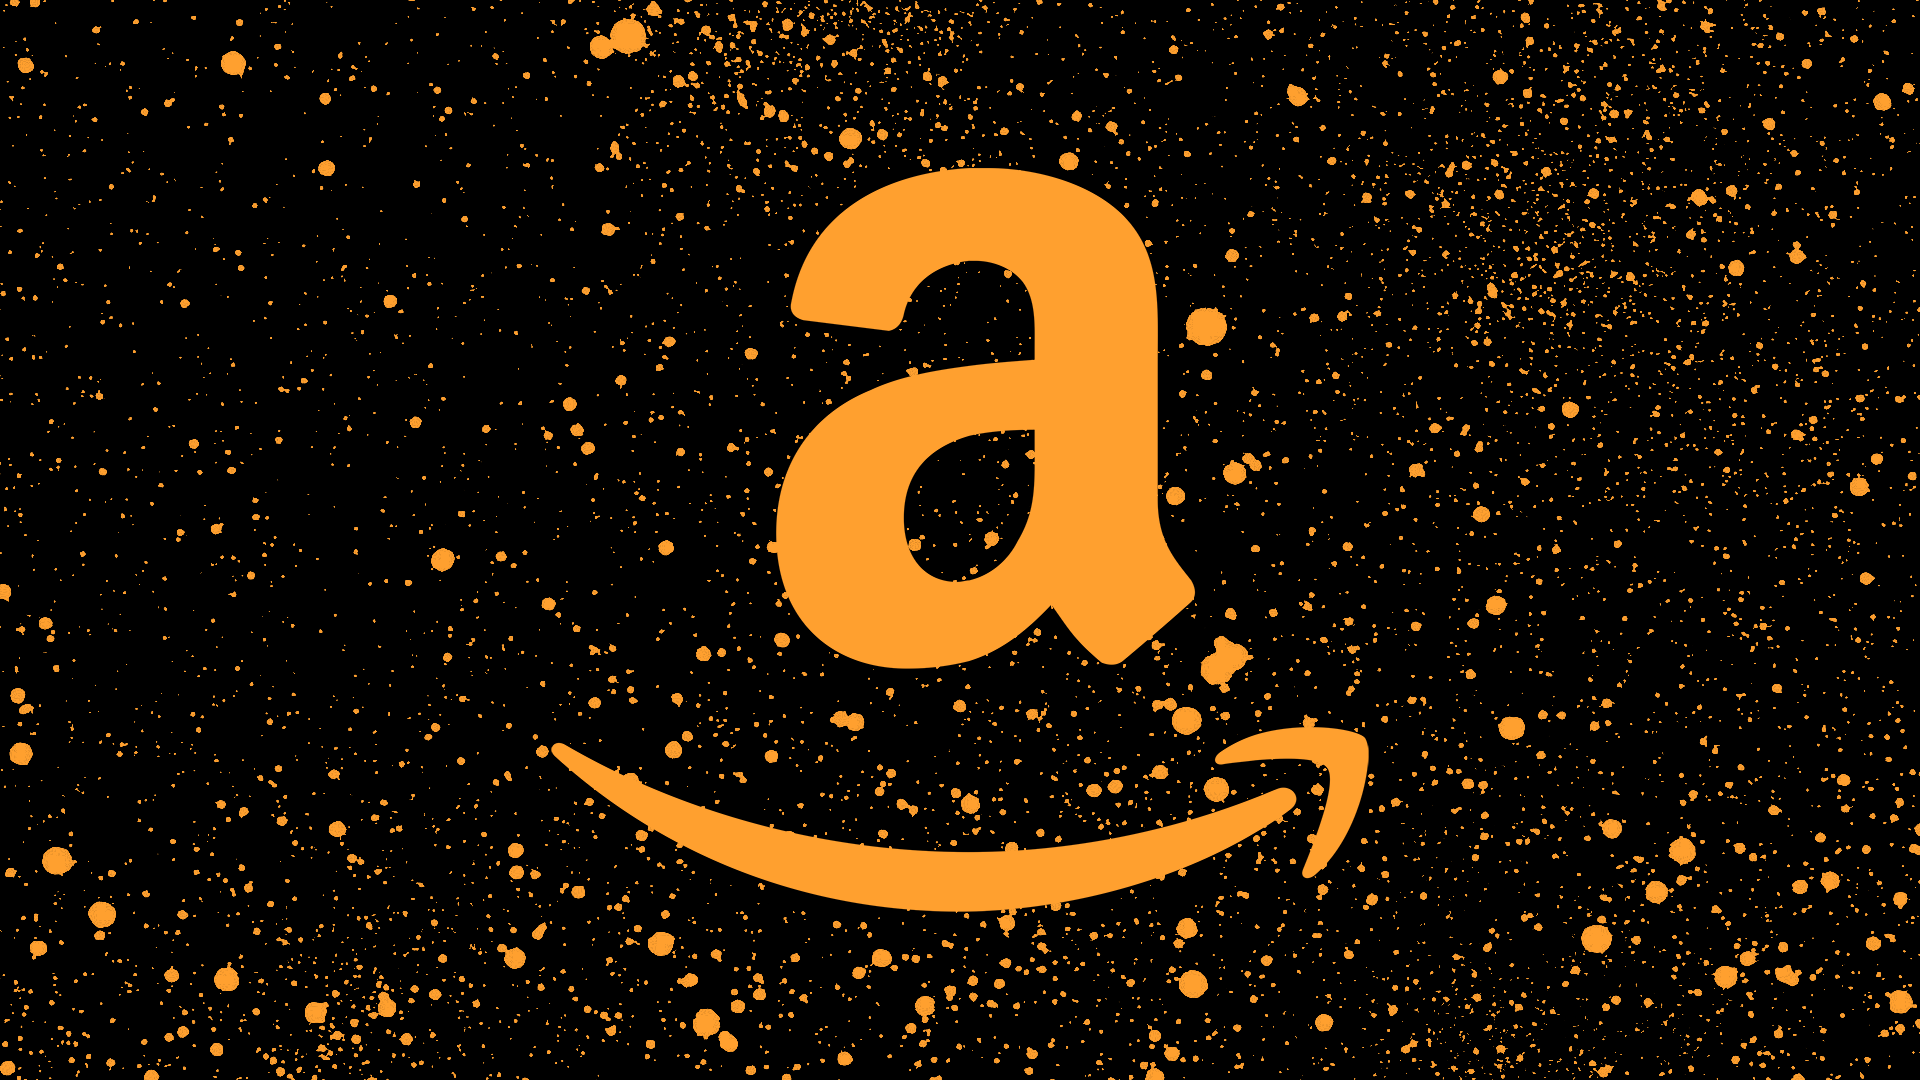 Amazon‘s världsherravälde bra eller bajs?